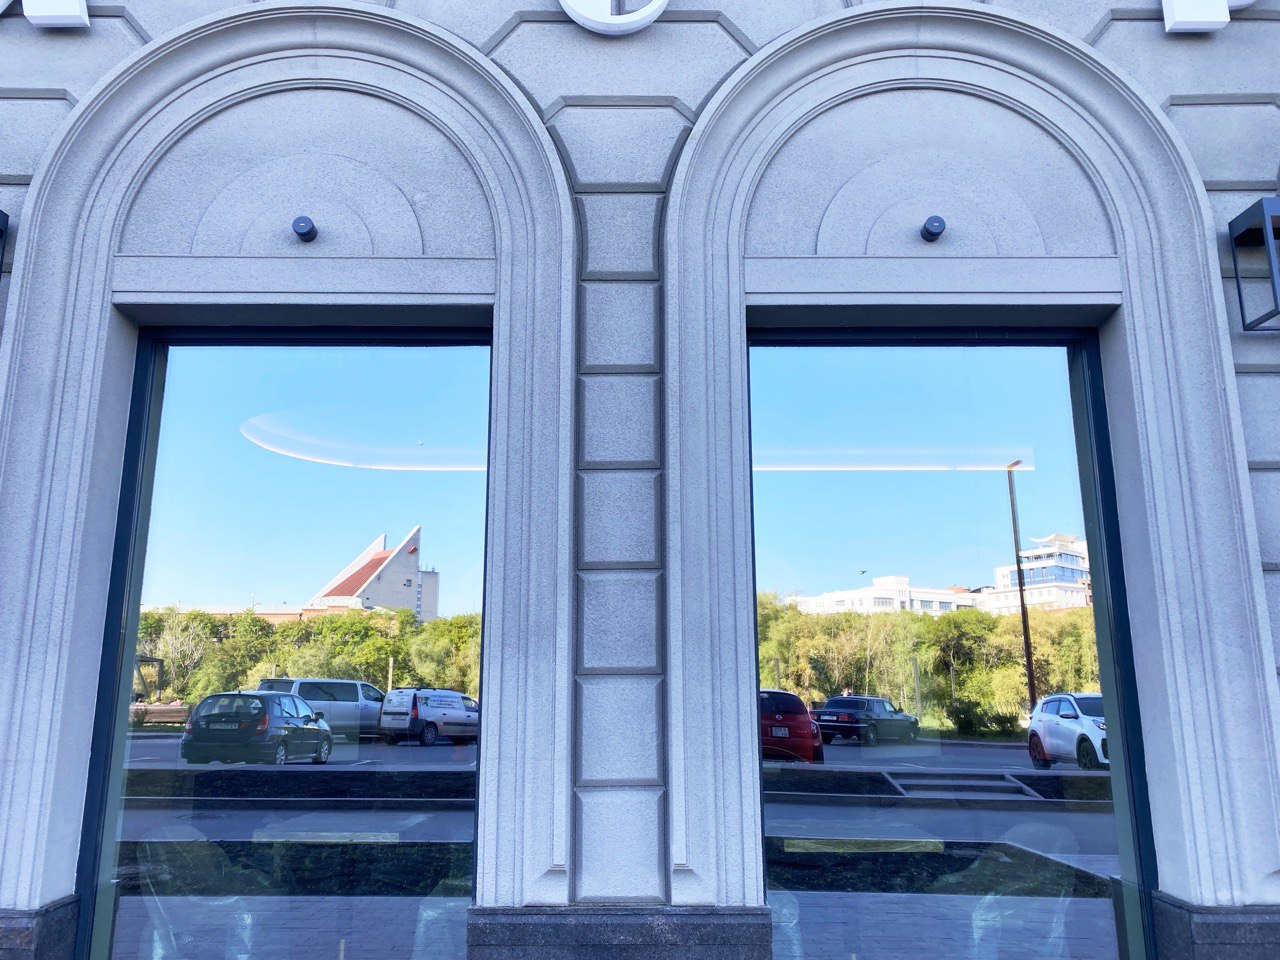 Фотоподборка выходного дня, посвященная омским окнам